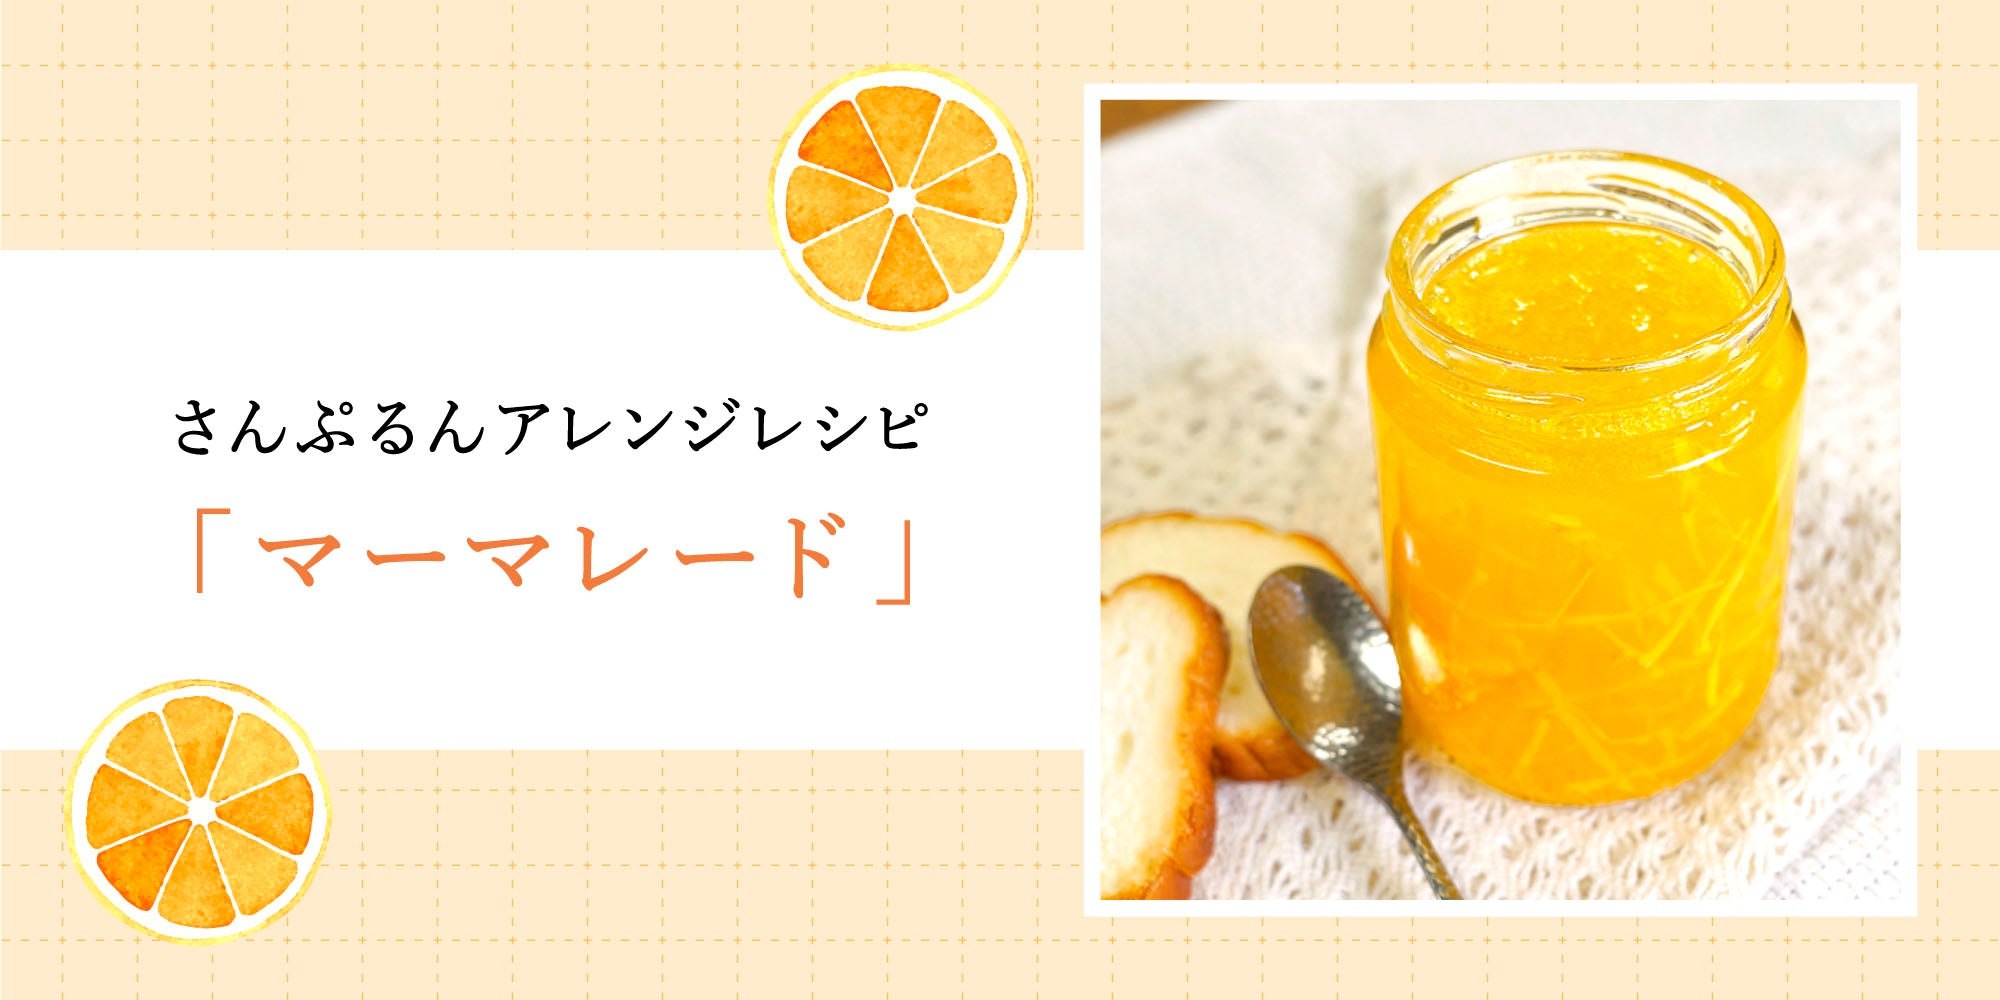 さんぷるんアレンジレシピ「マーマレード」